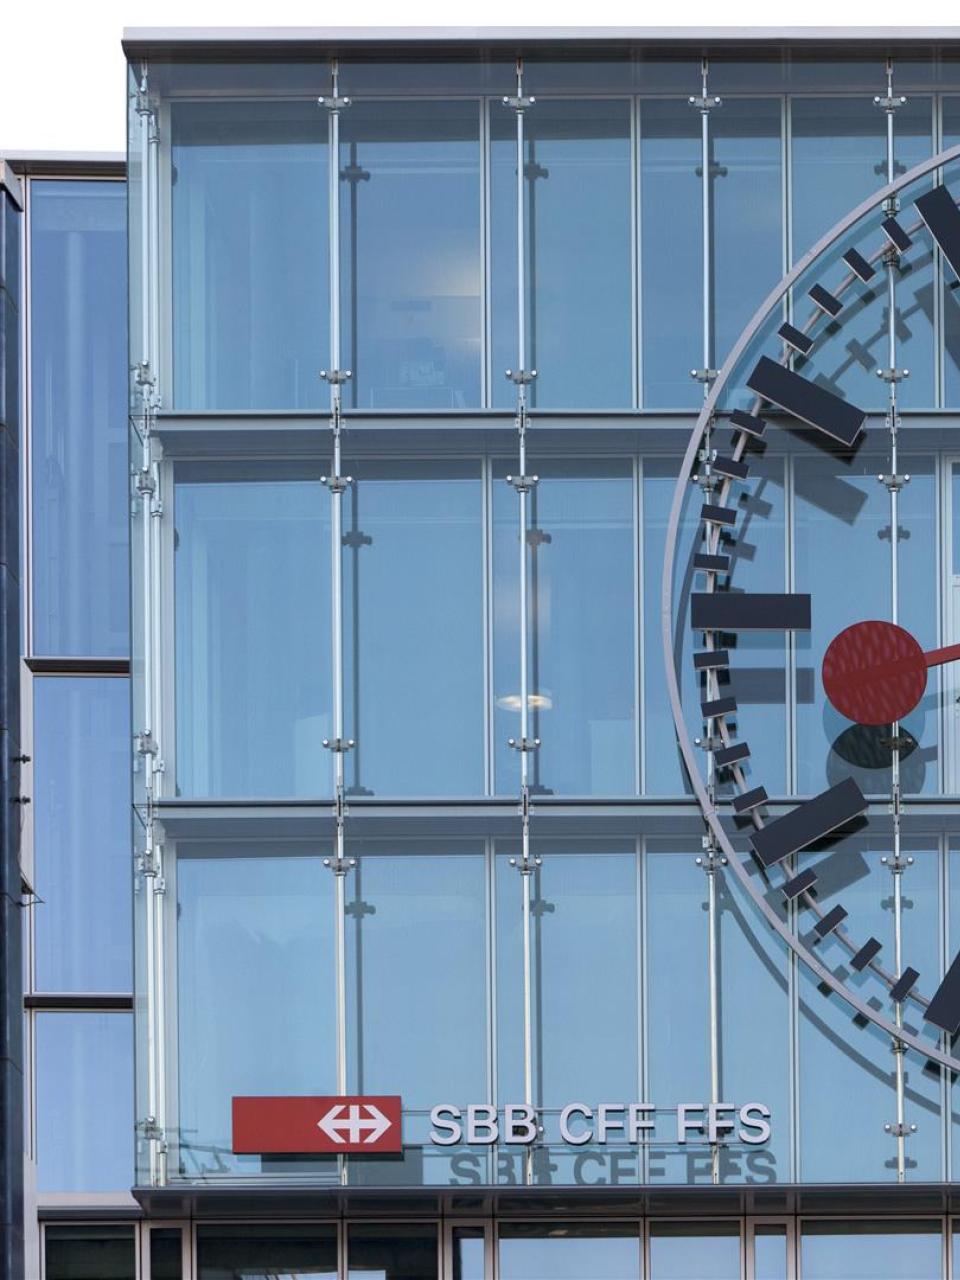 La plus grande horloge de Suisse (9 mètres de diamètre), Gare d'Aarau © CFF